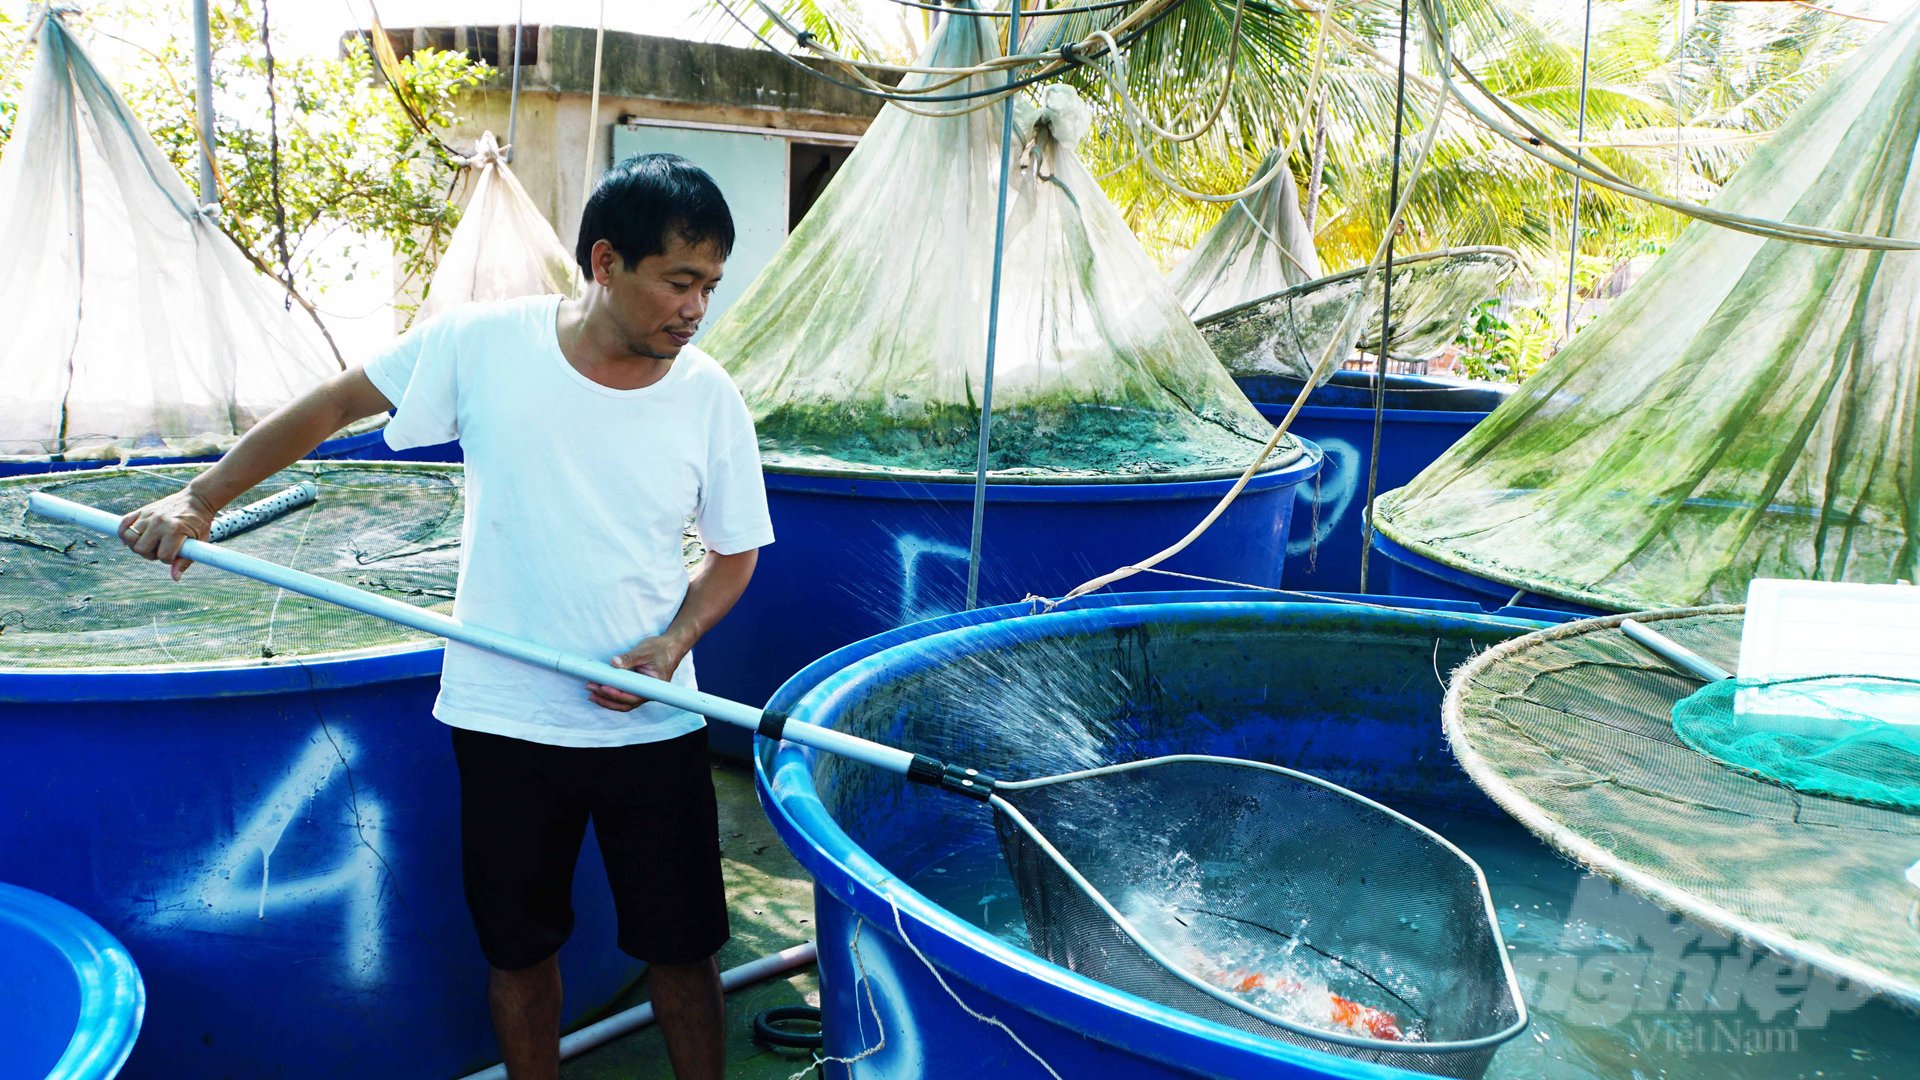 Gần 20 năm trong nghề, anh Nguyễn Ngọc Hải cho biết cá Koi Việt Nam cũng đang có thương hiệu trên thị trường, chủ động được nguồn giống tốt. Ảnh: Lê Bình.